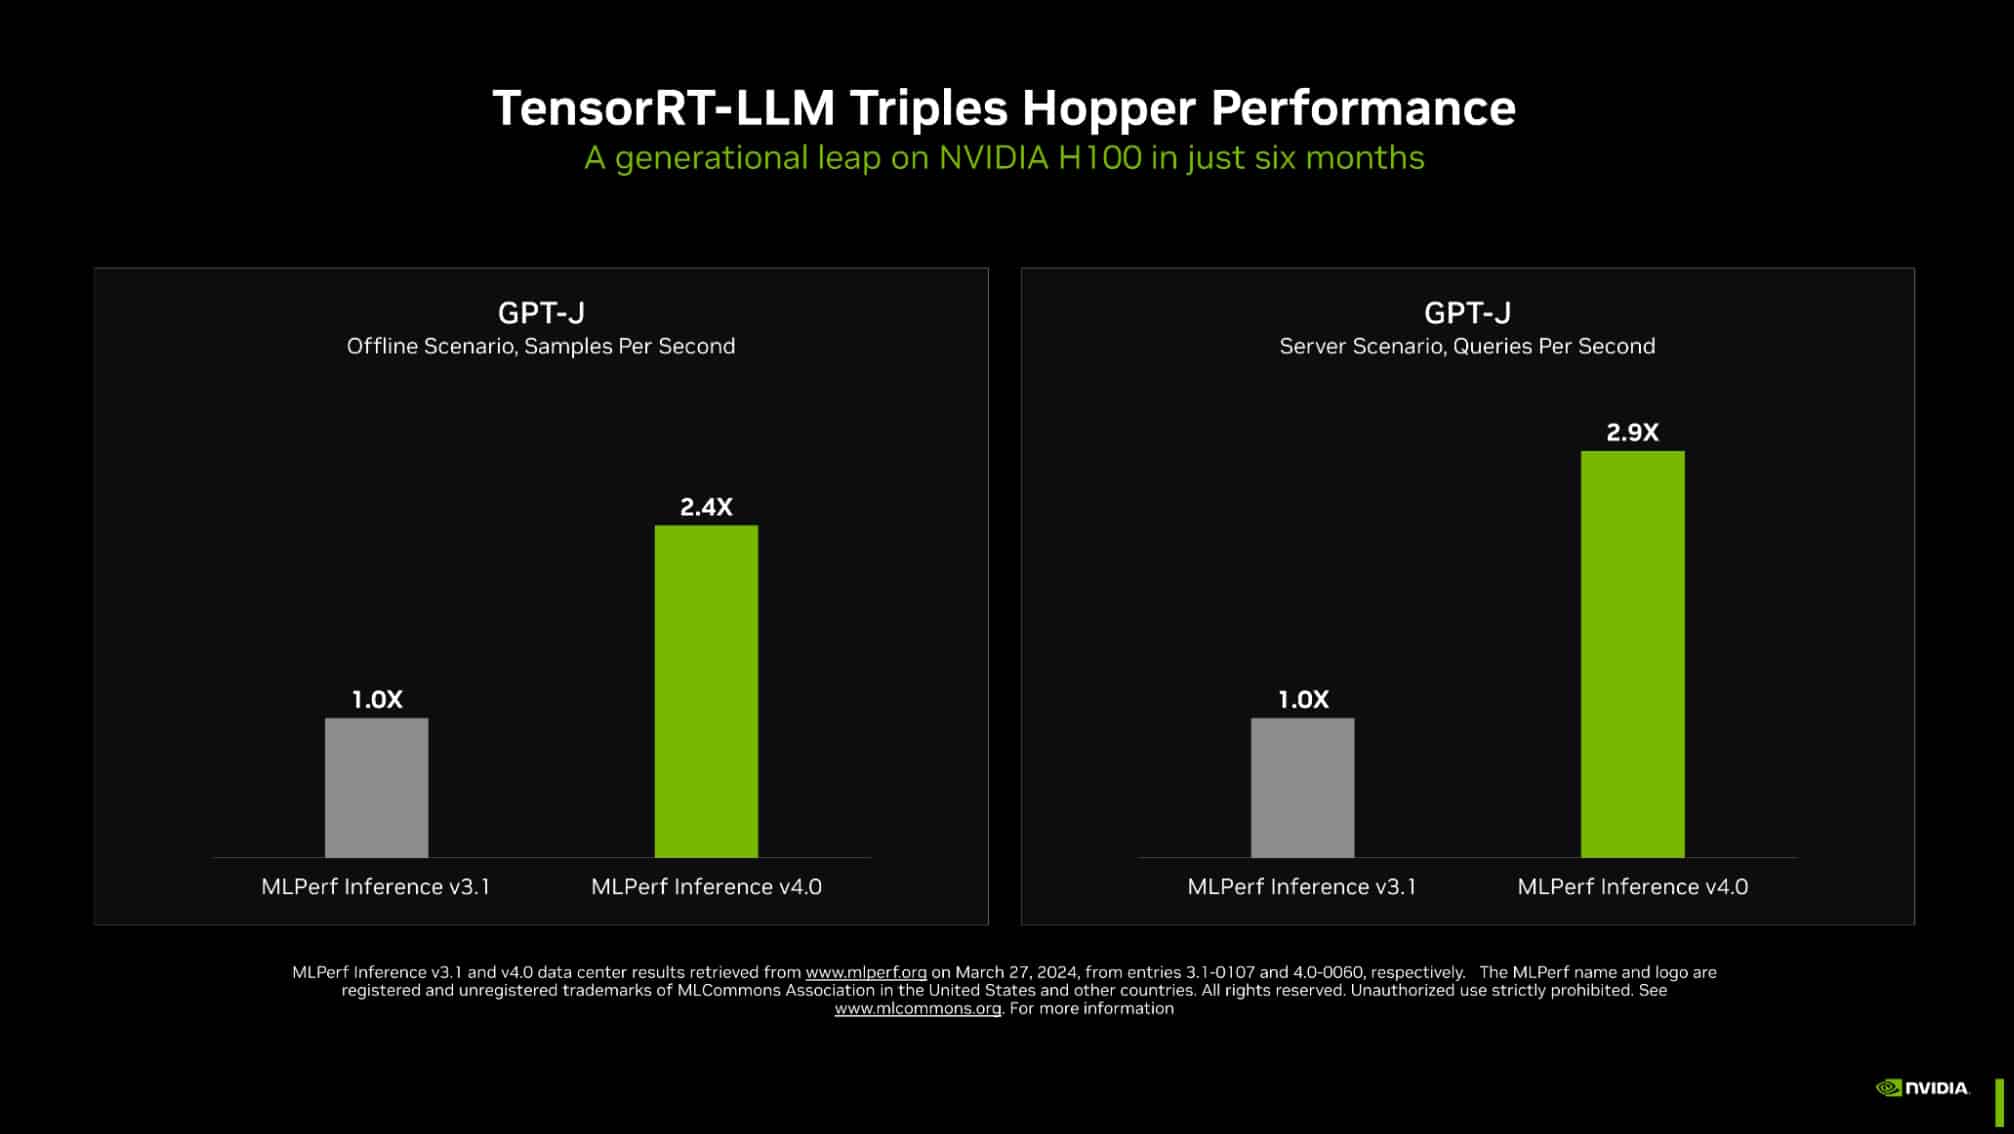 Nvidia та Intel встановлюють нові стандарти продуктивності AI в бенчмарках MLPerf 4.0